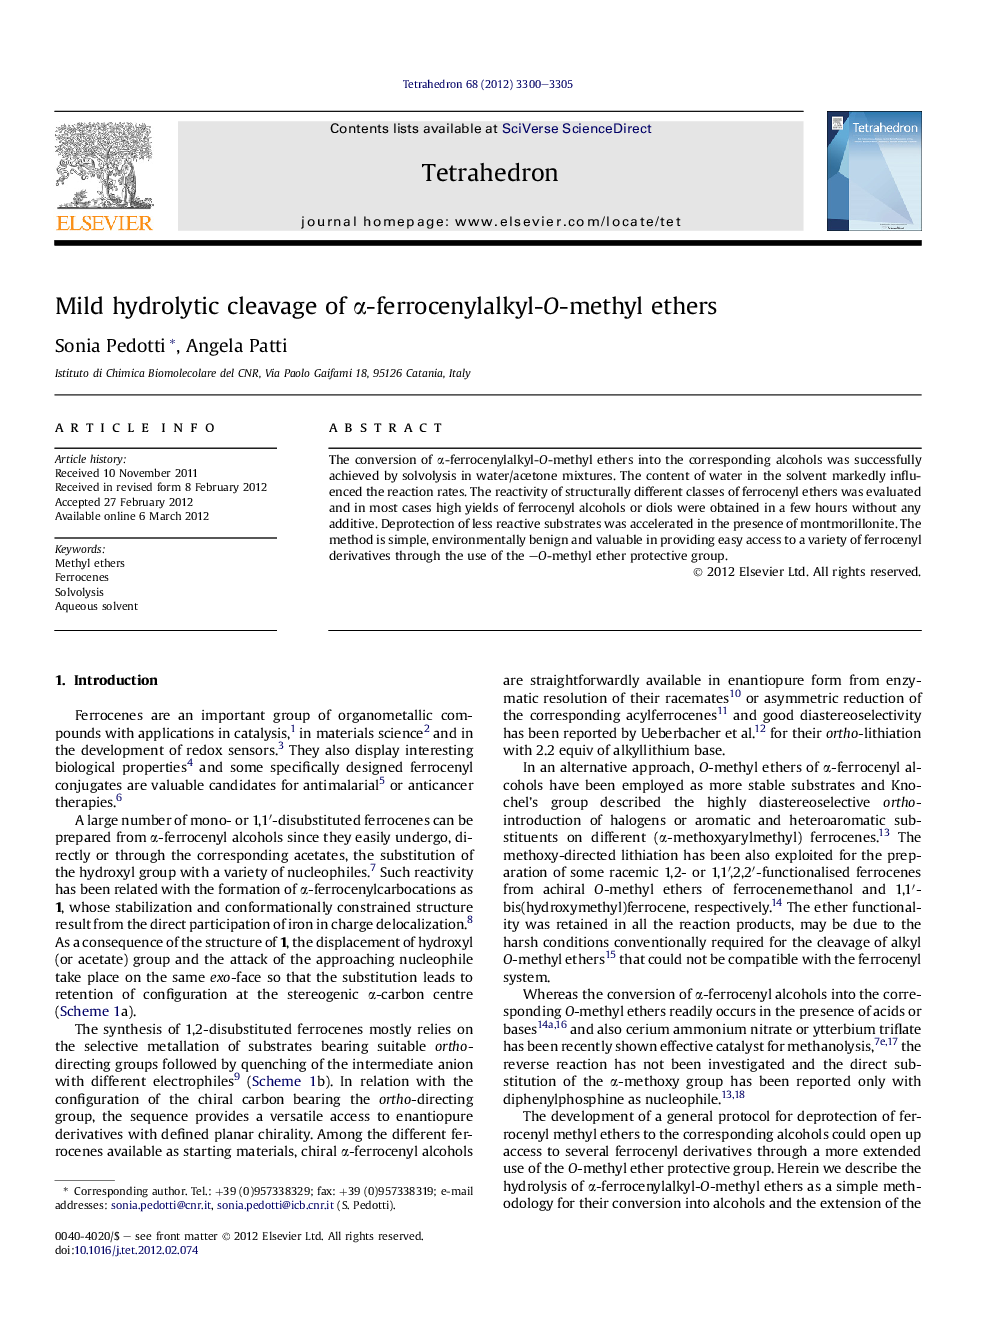 Mild hydrolytic cleavage of Î±-ferrocenylalkyl-O-methyl ethers